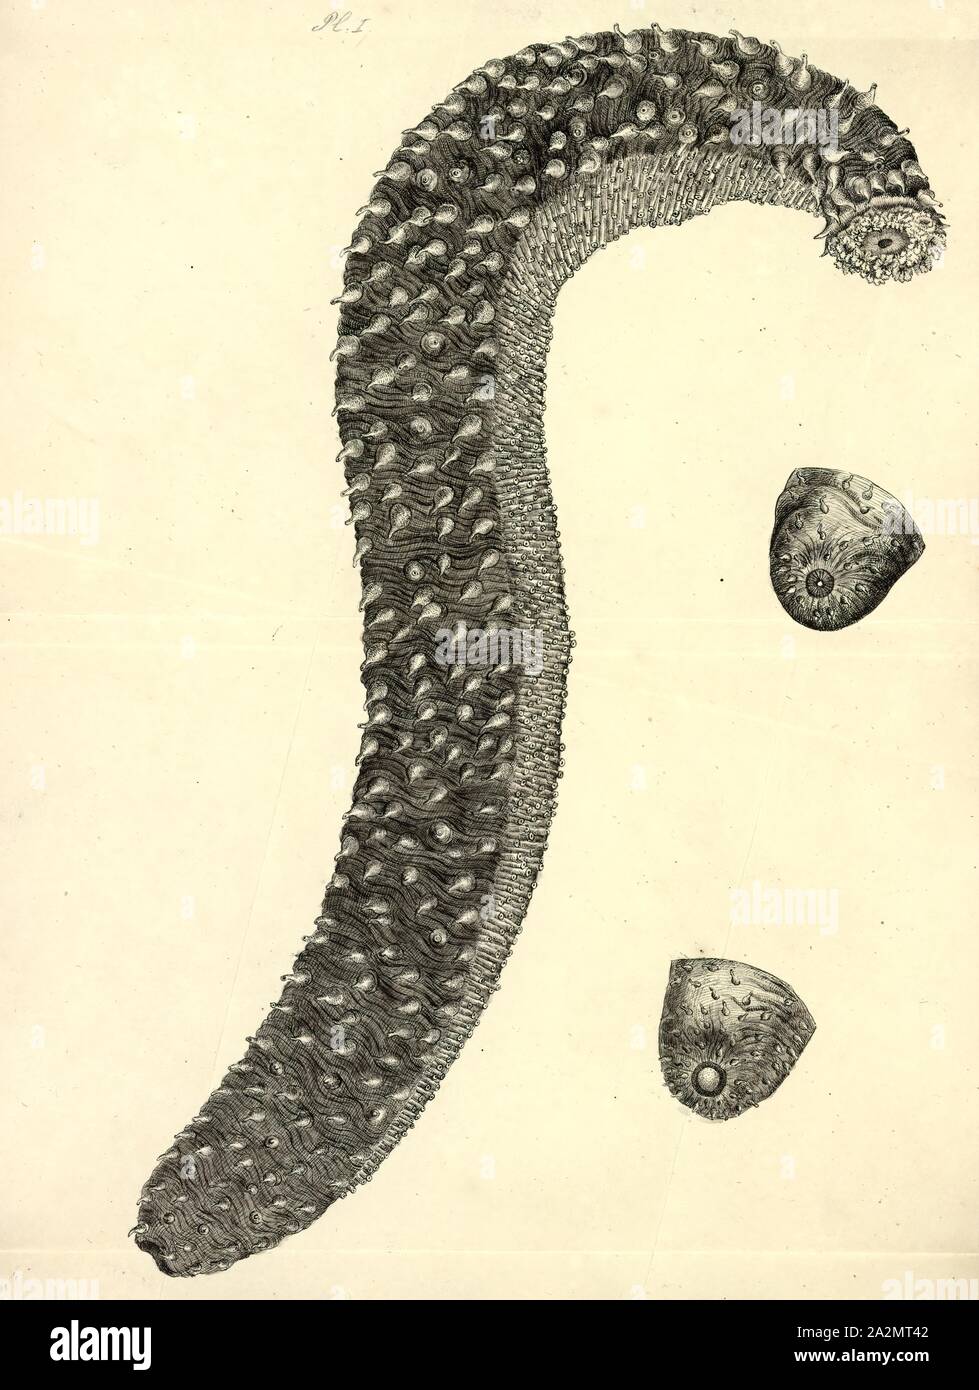 Holothuria tubulosa, Print, Holothuria tubulosa, the cotton-spinner or tubular sea cucumber, is a species of sea cucumber in the family Holothuriidae. It is the type species of the genus Holothuria and is placed in the subgenus Holothuria, making its full name Holothuria (Holothuria) tubulosa Stock Photo